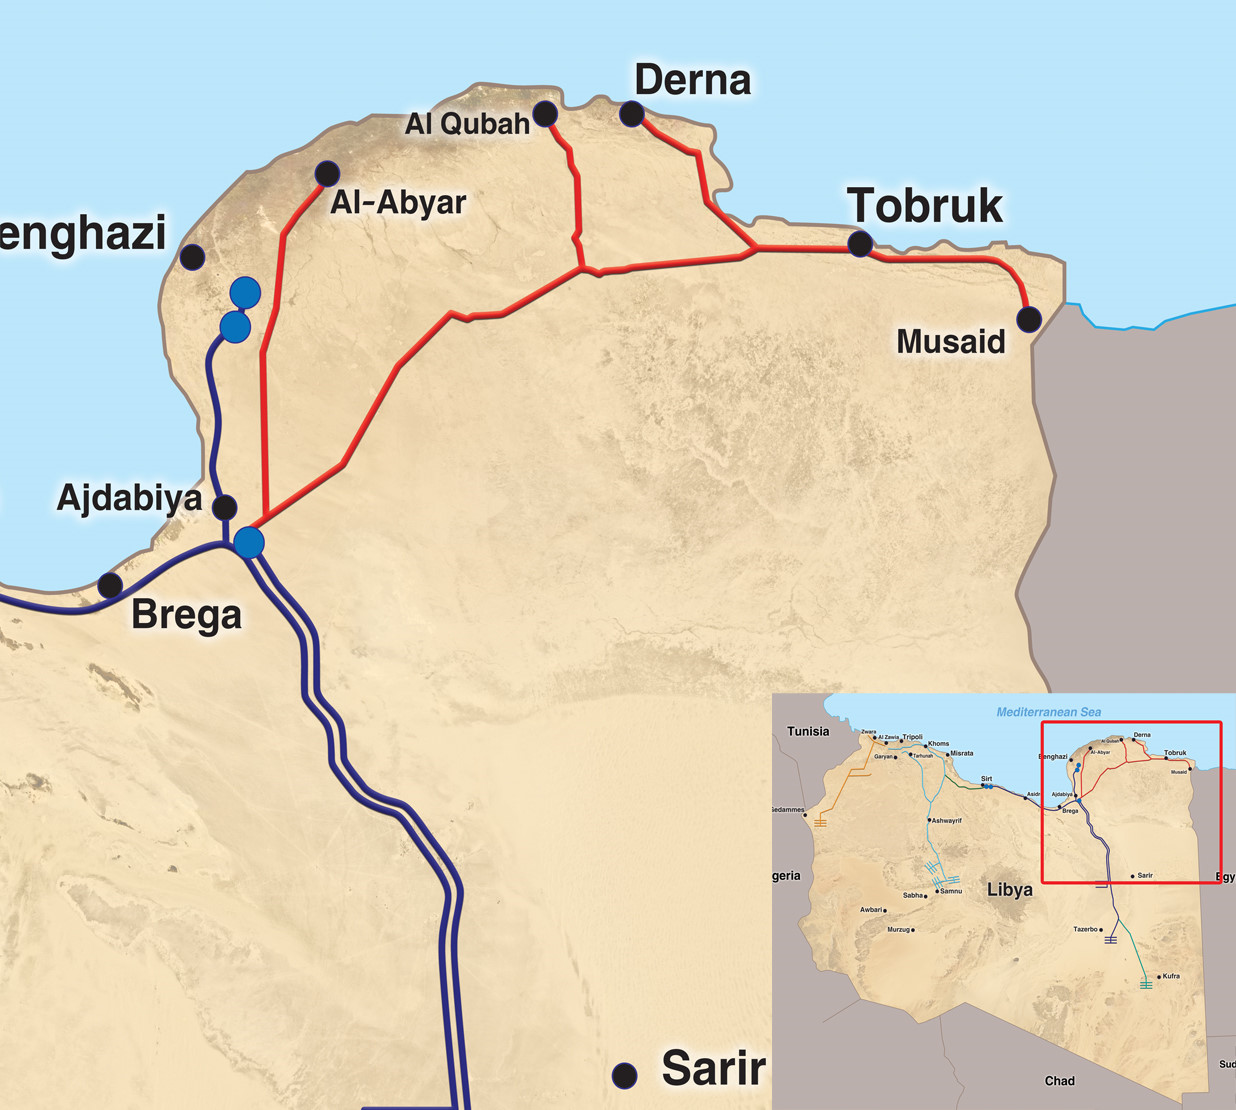 Ajdabiya - Tobruk